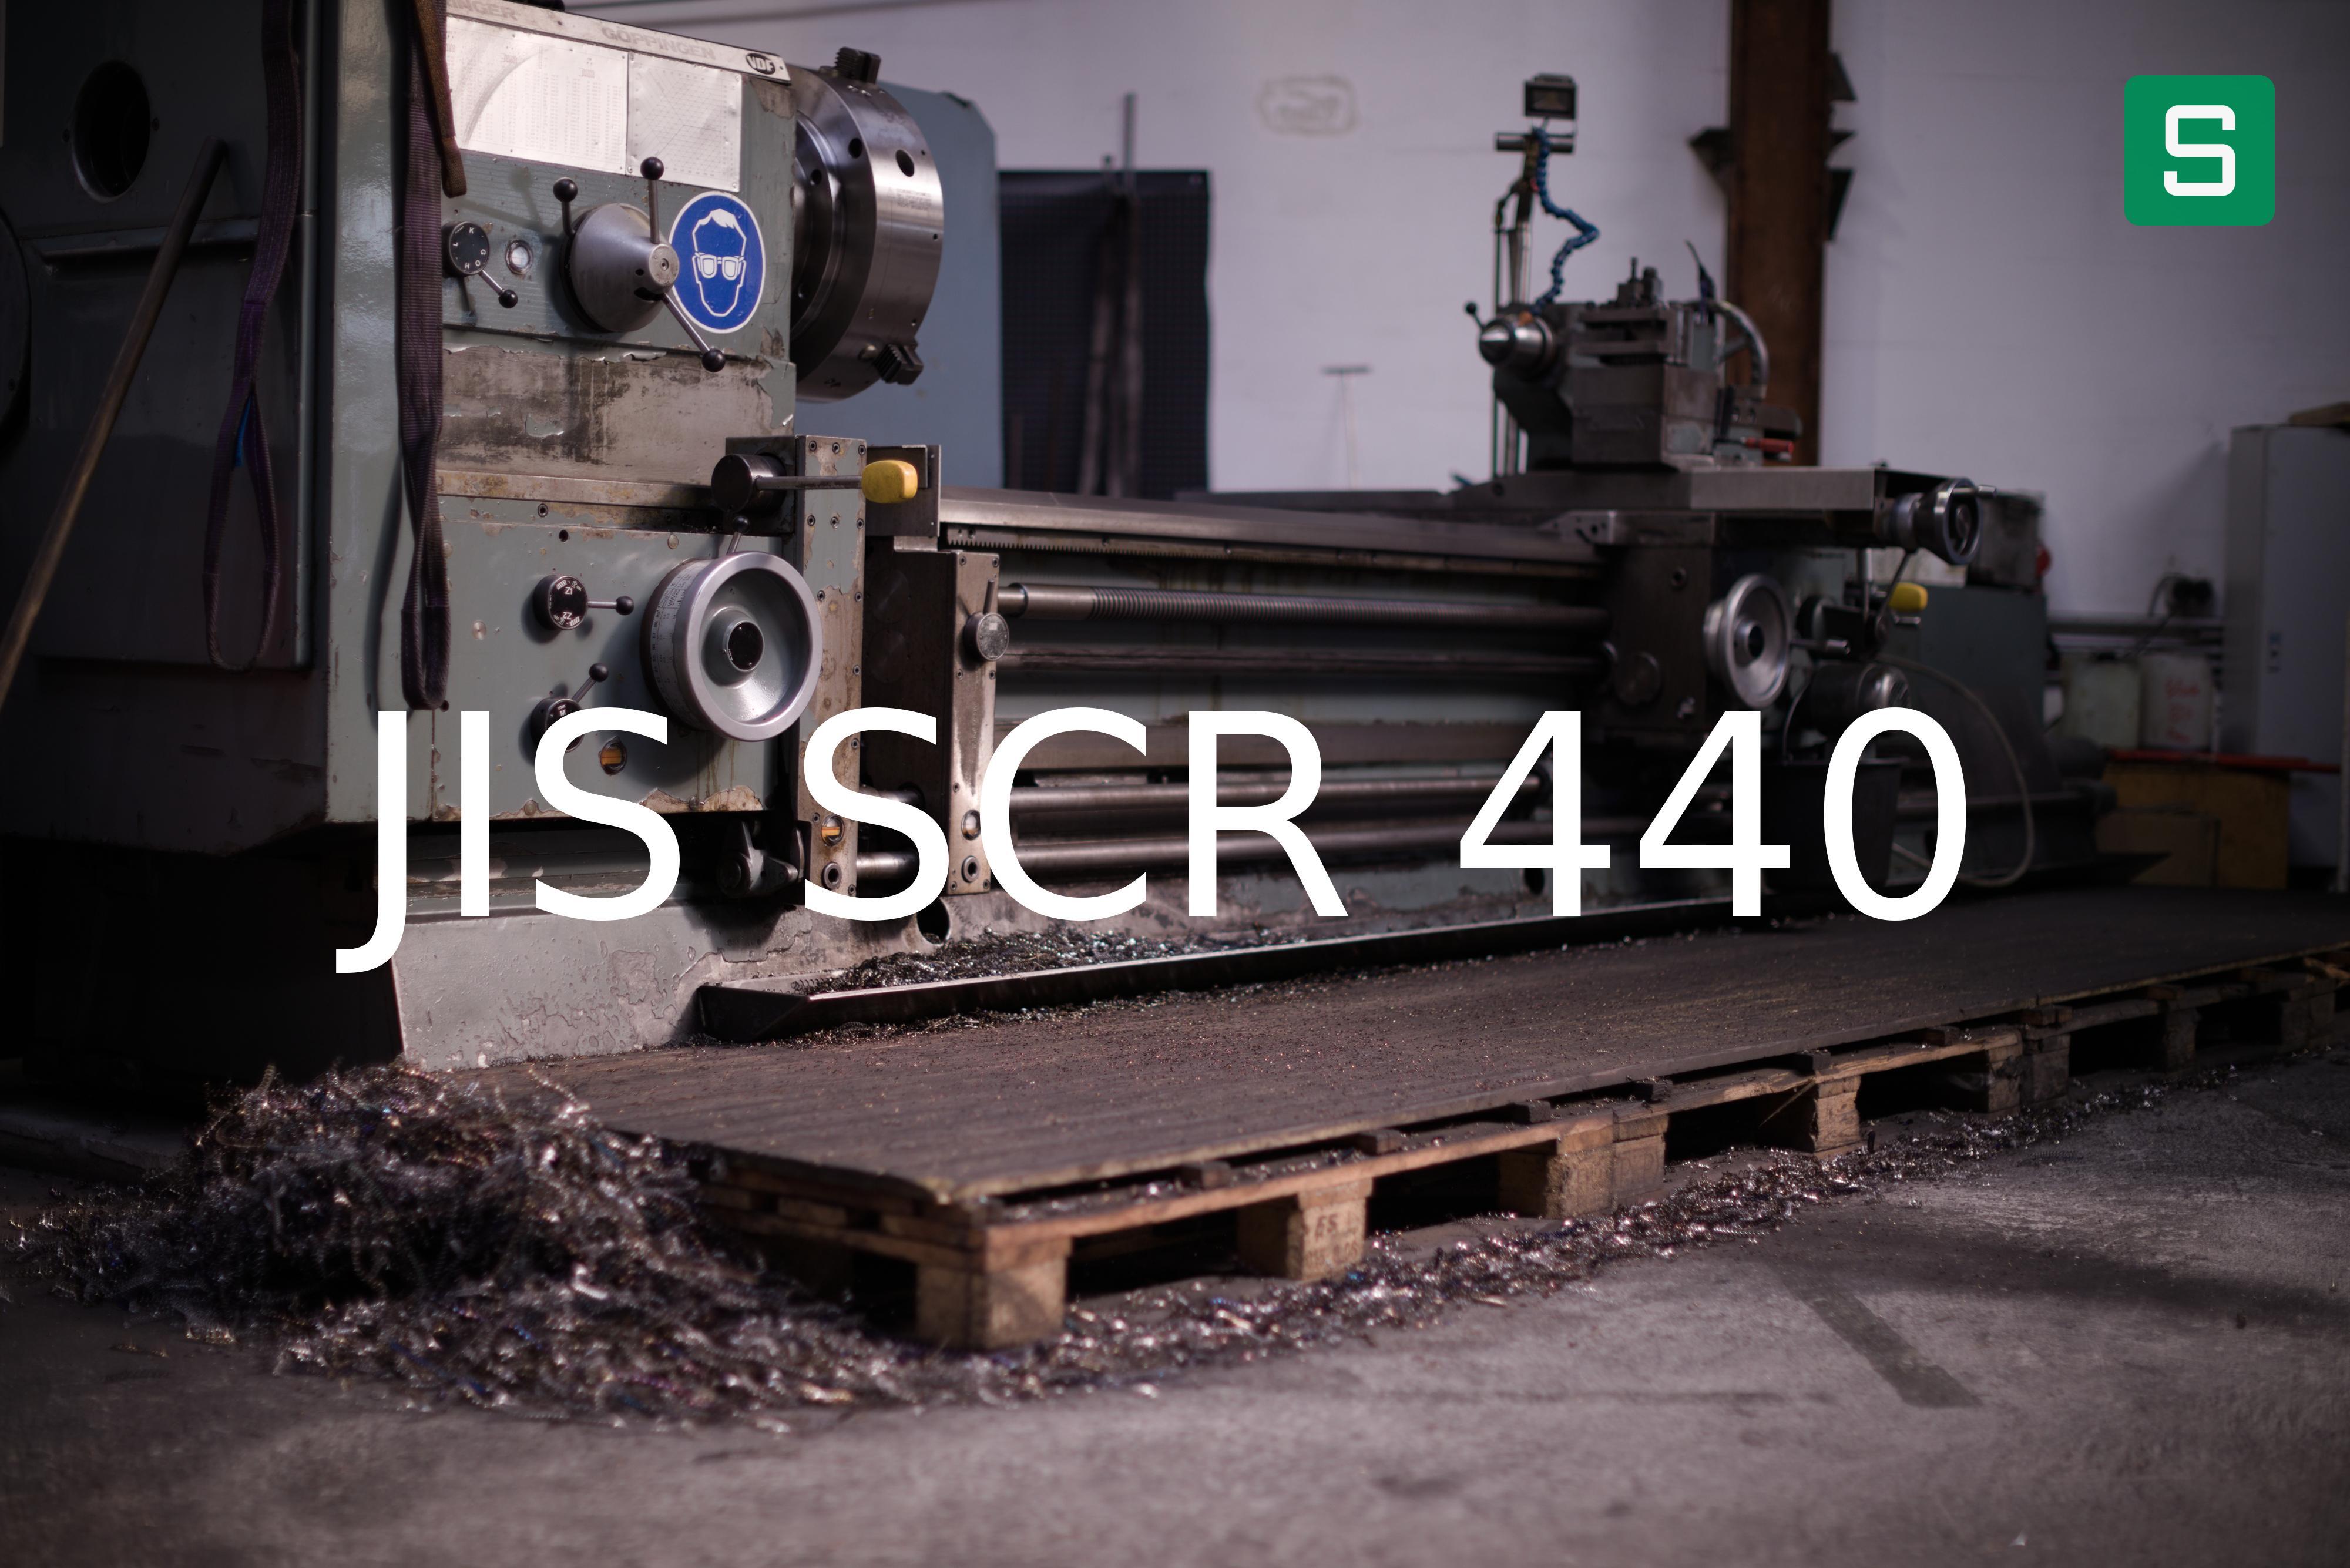 Steel Material: JIS SCR 440